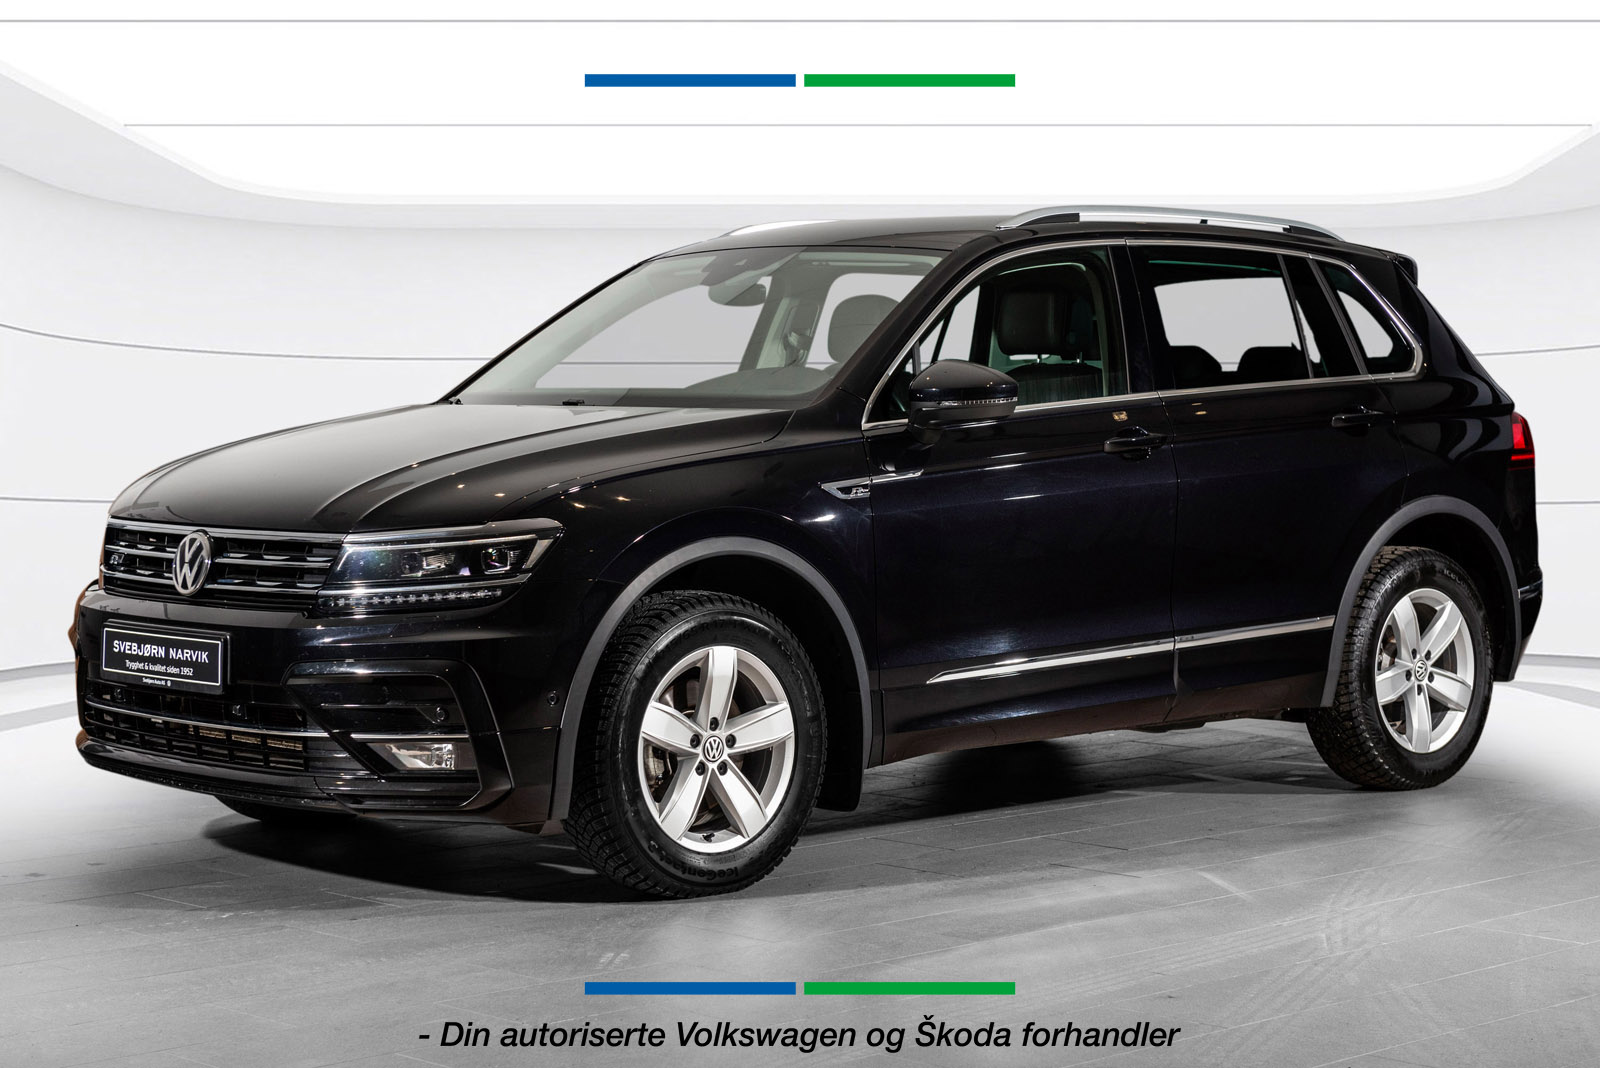 2020 Volkswagen Tiguan excl.r 150 tdi 4m dsg*